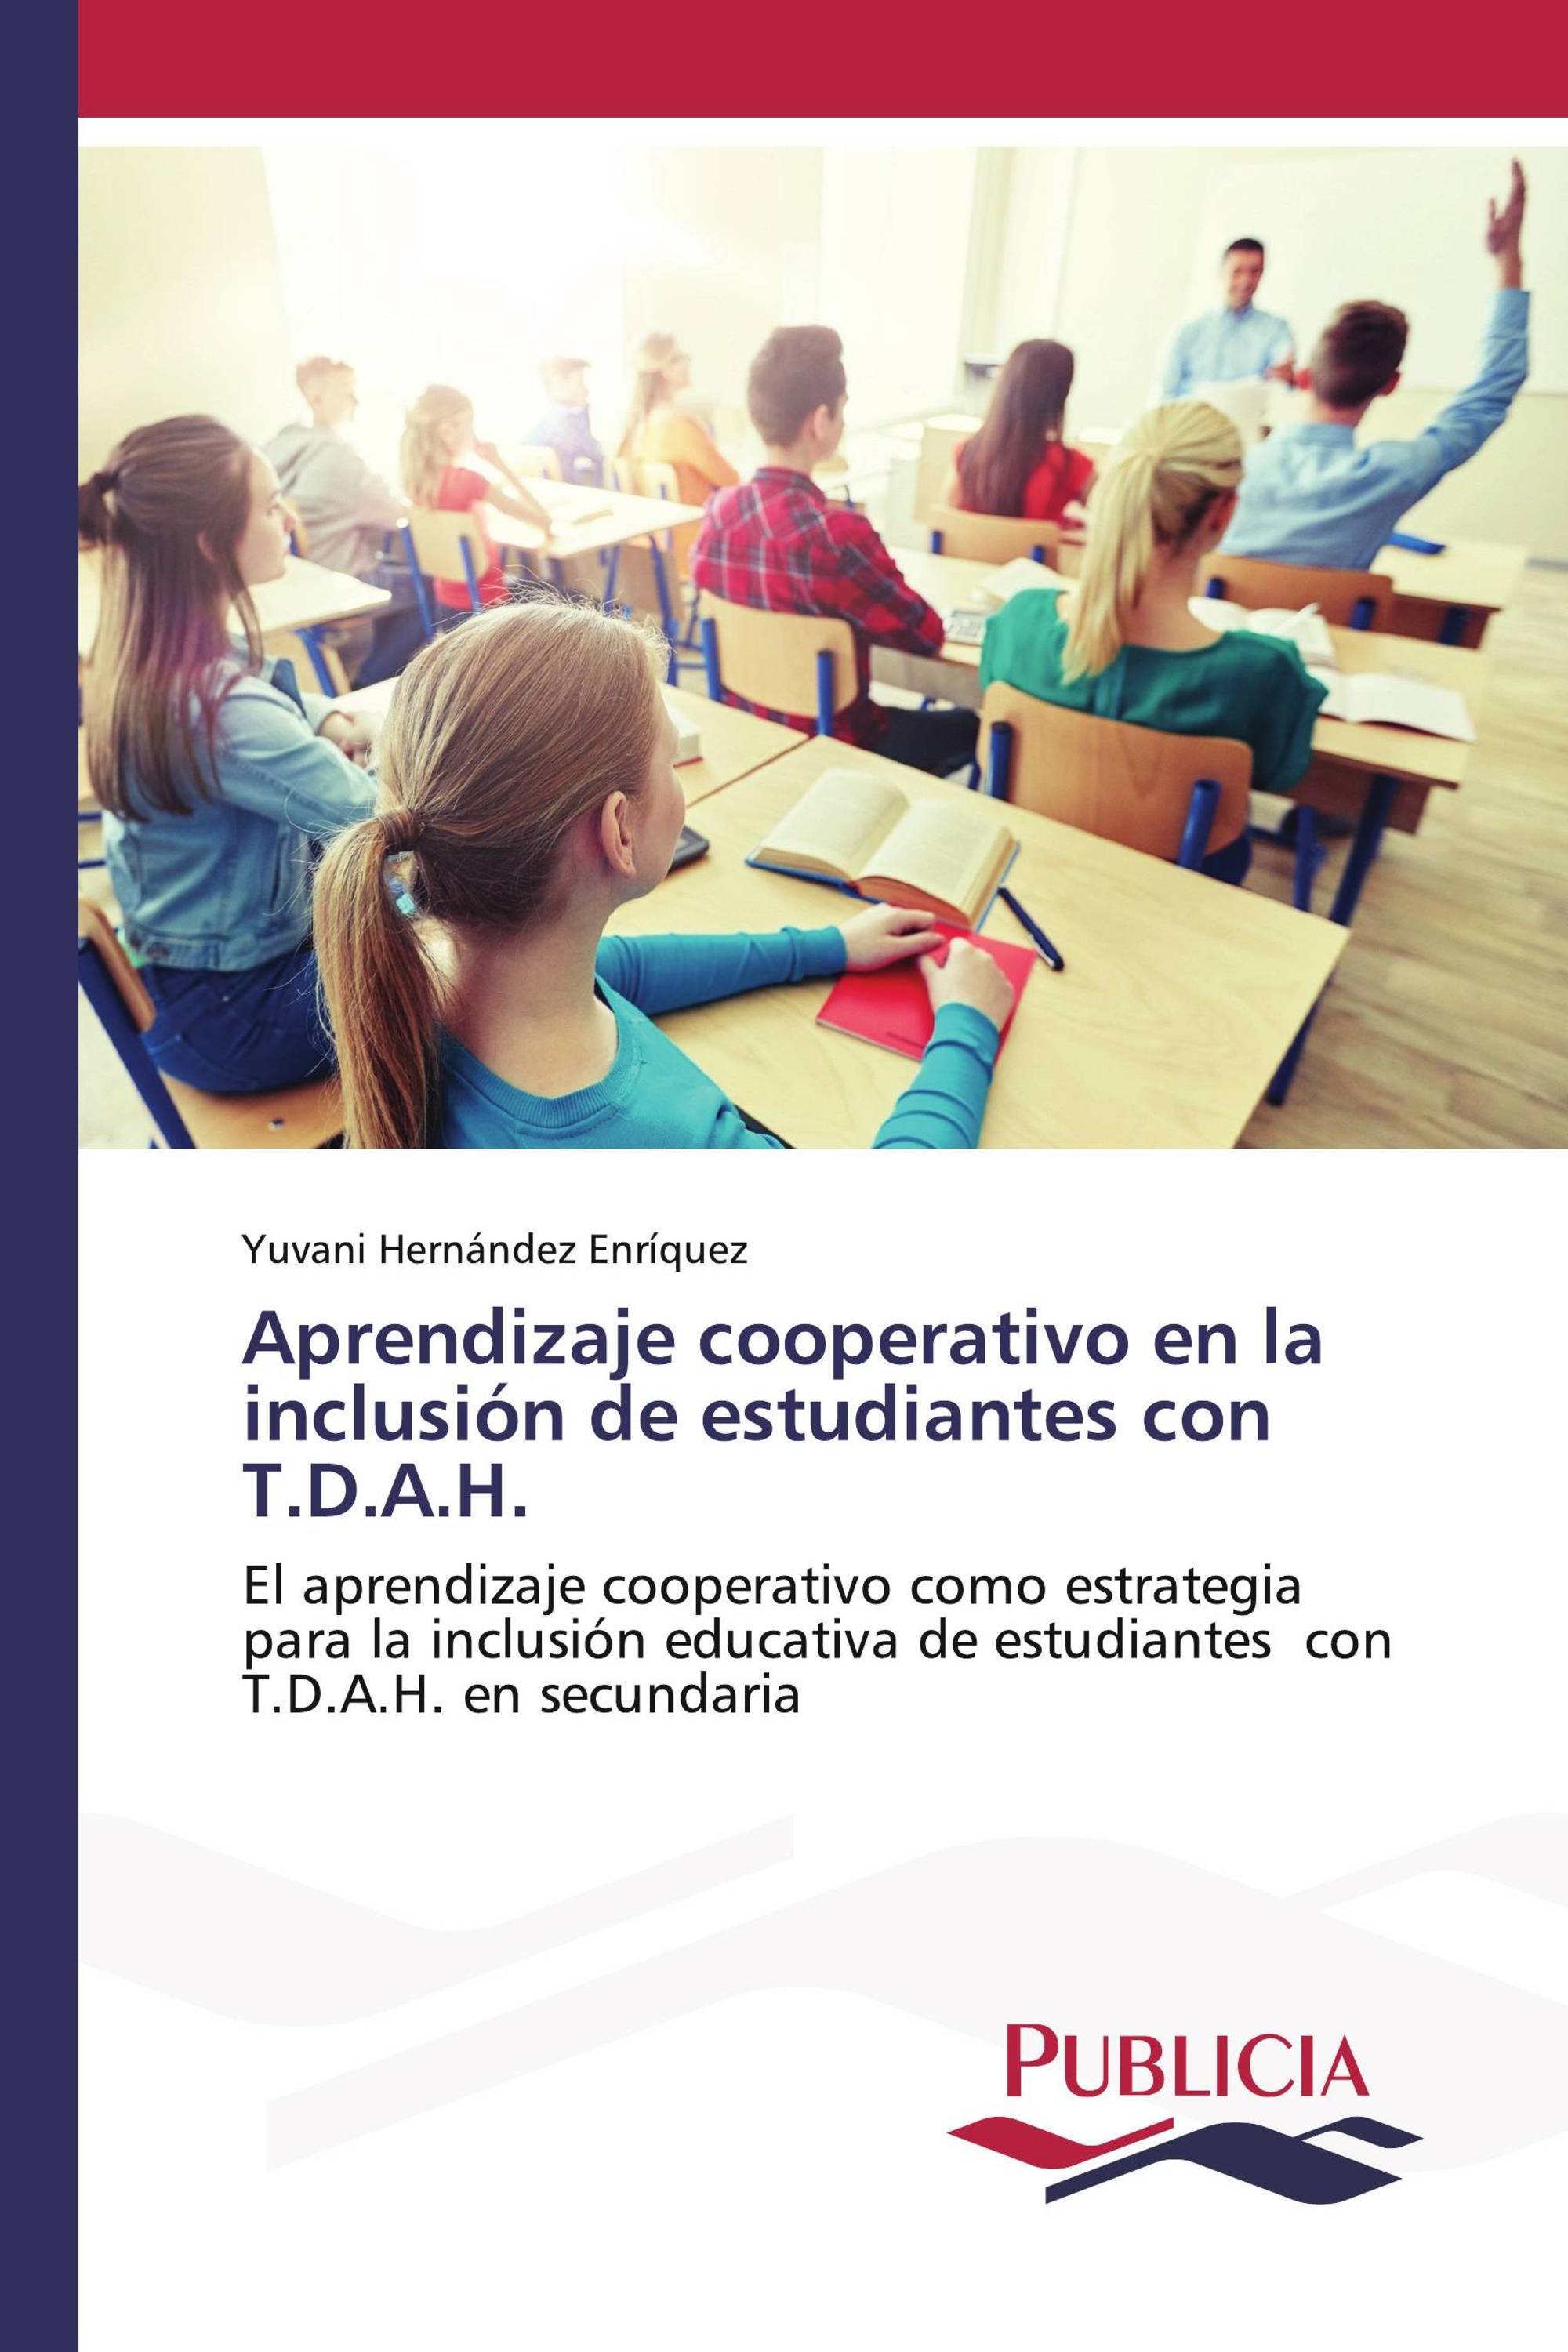 Aprendizaje cooperativo en la inclusión de estudiantes con T.D.A.H.